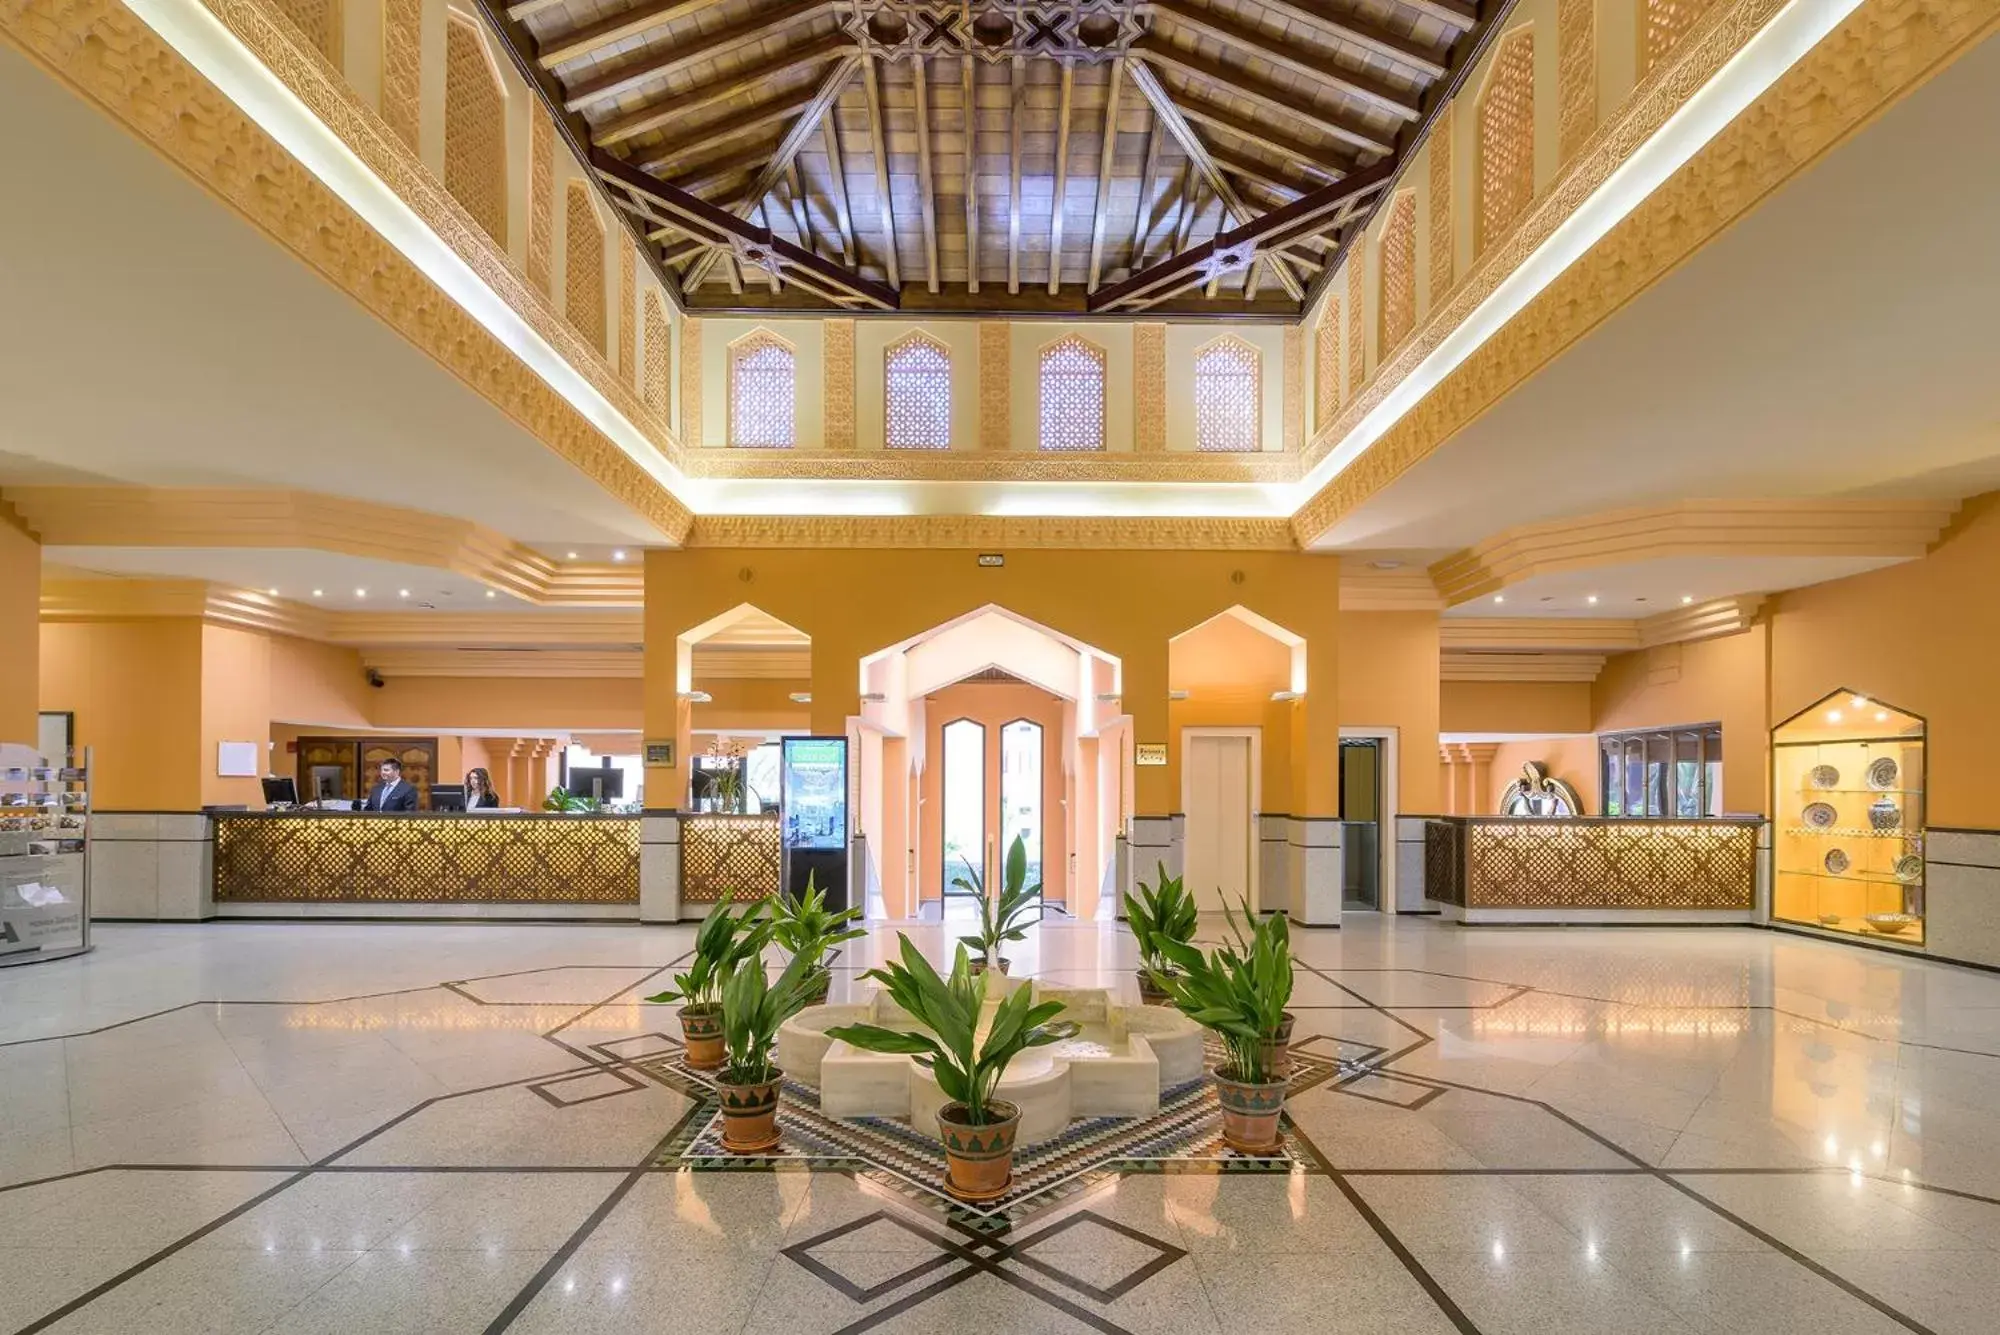 Lobby or reception, Lobby/Reception in Hotel Saray